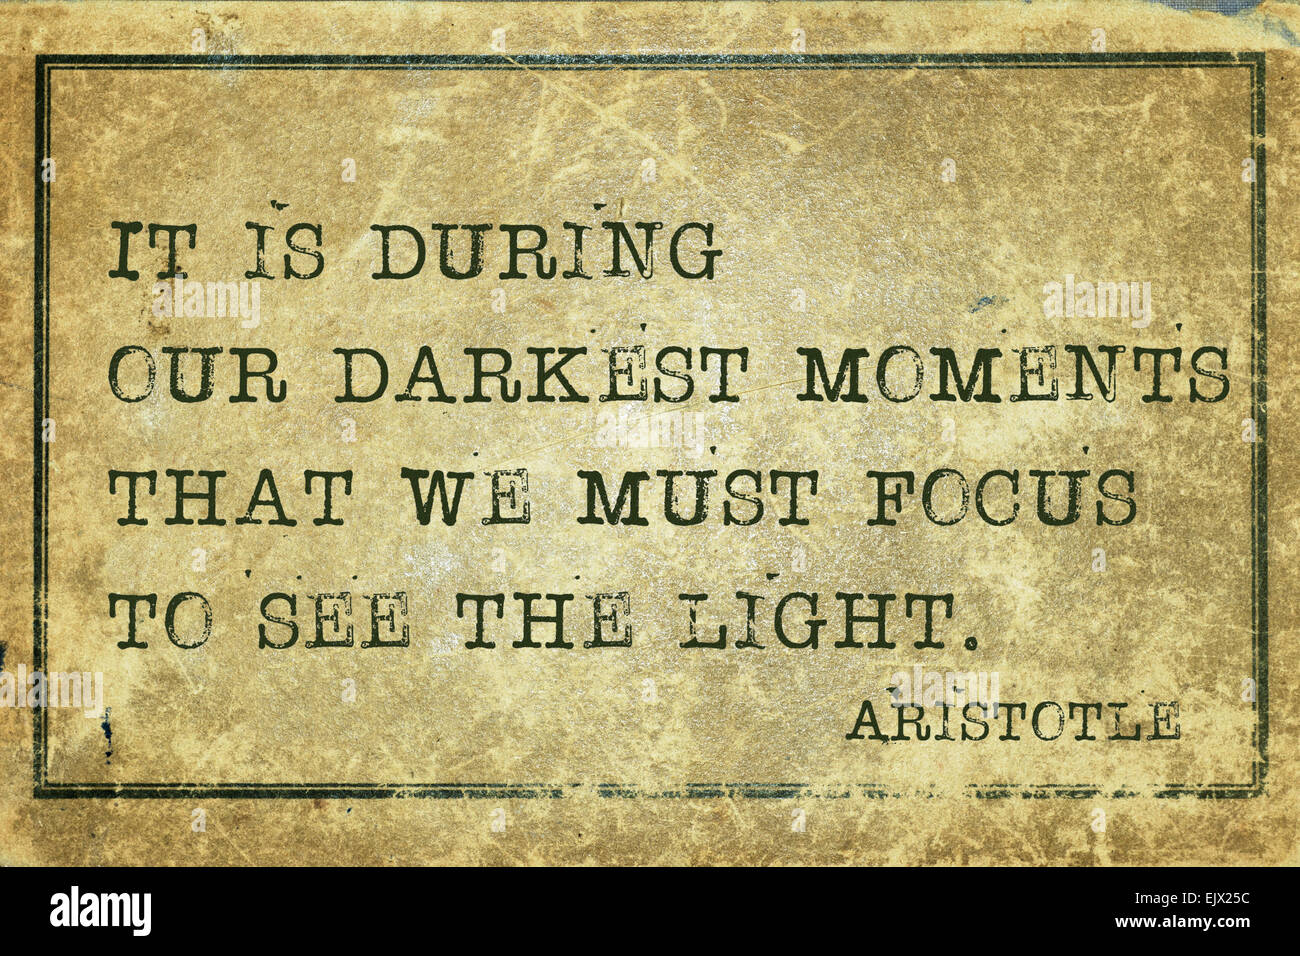 Es ist in unseren dunkelsten Momenten - der griechische Philosoph Aristotle Zitat auf Grunge Vintage Karton gedruckt Stockfoto